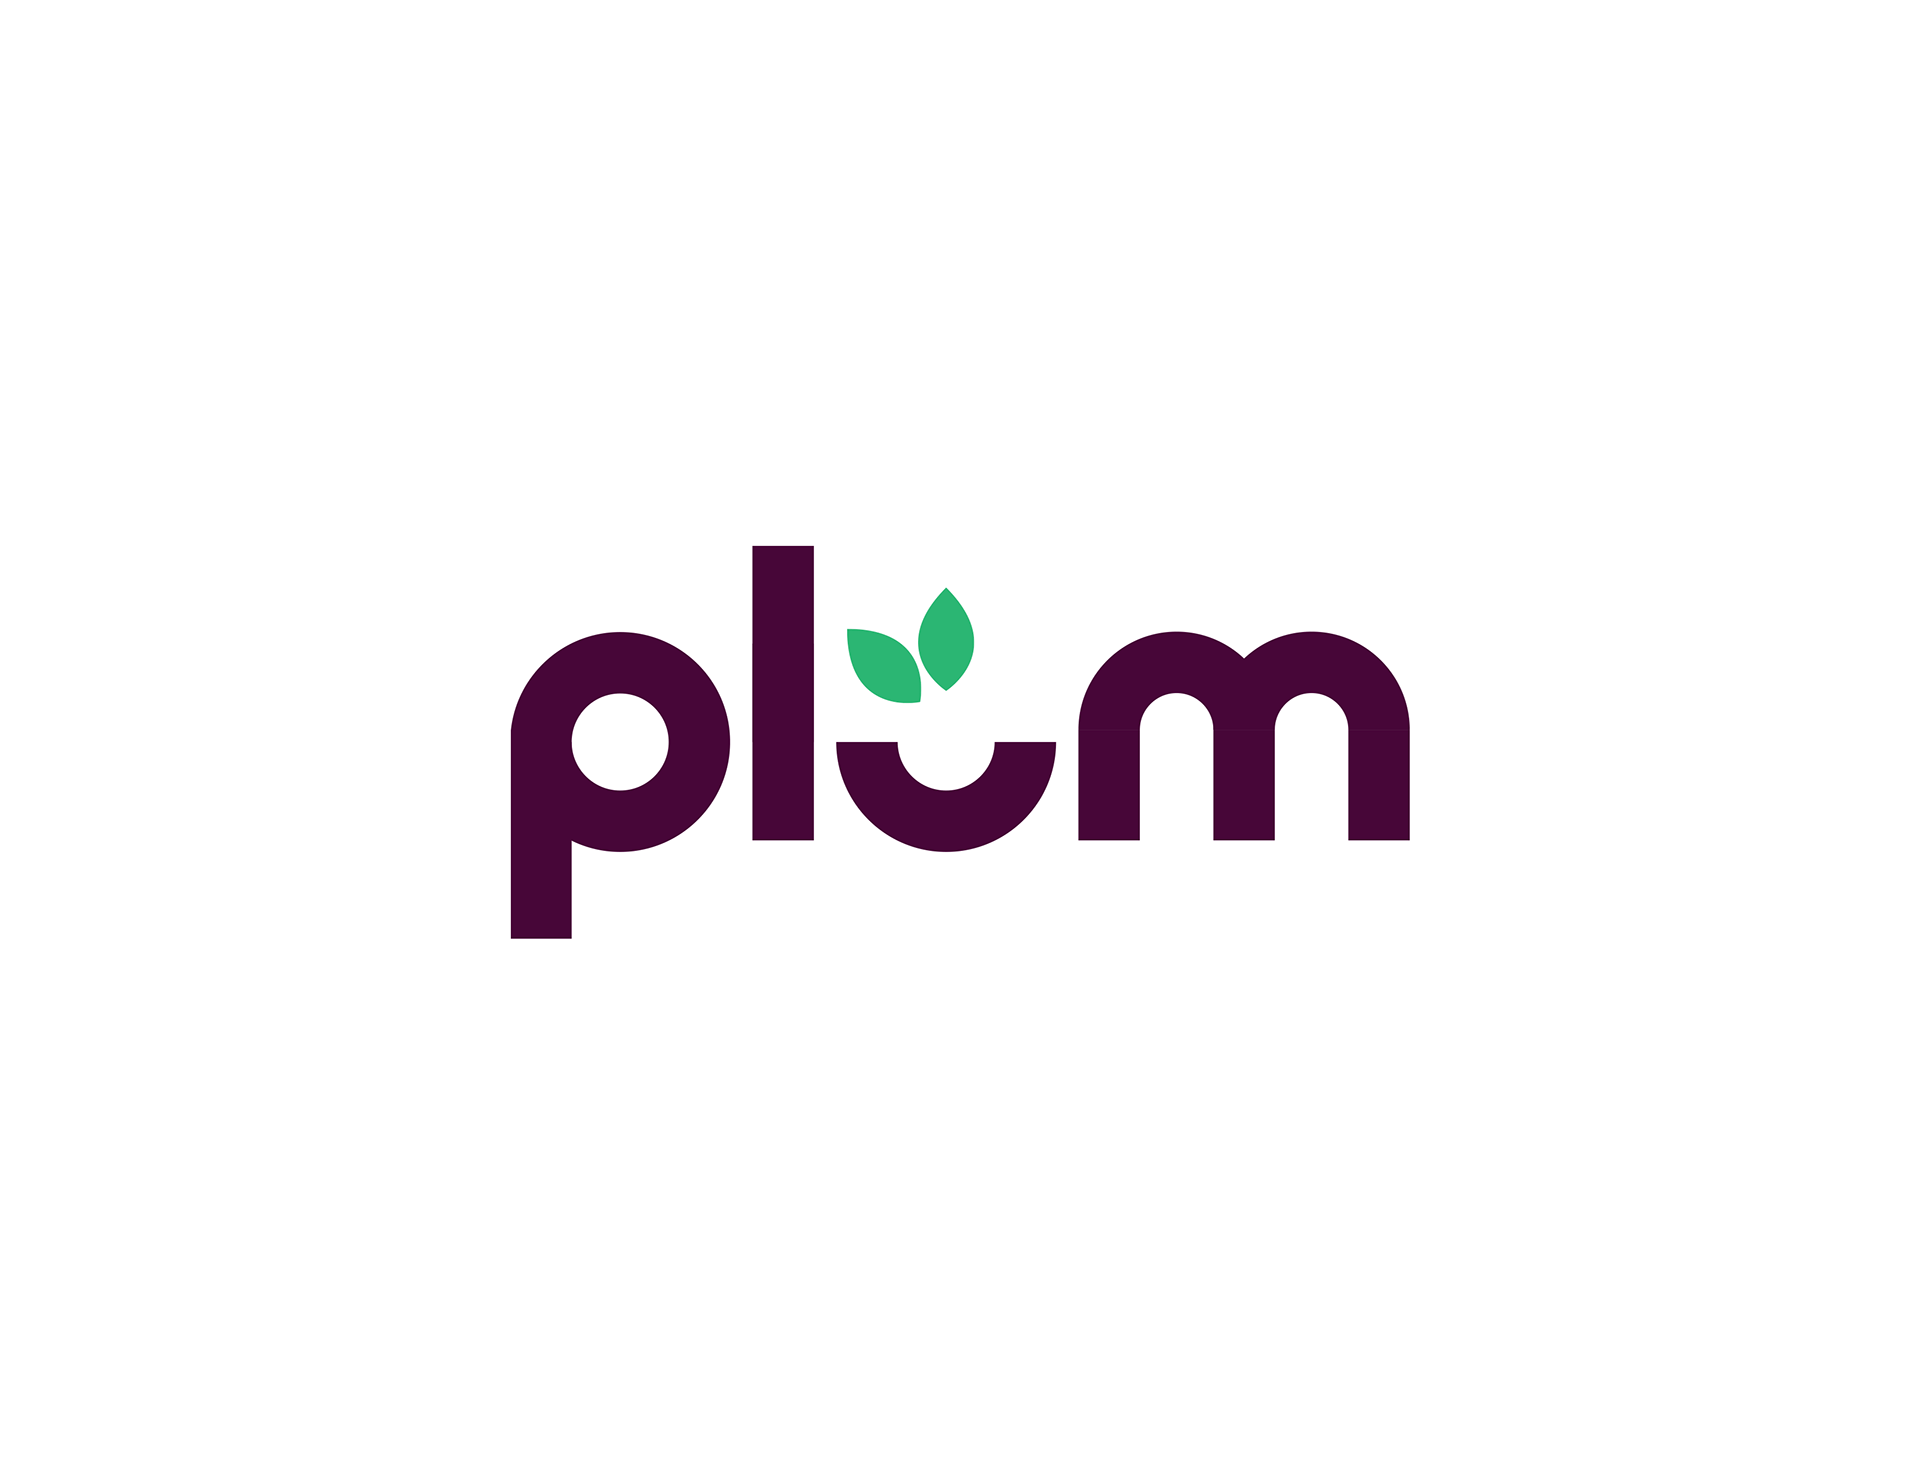 Plum Logo - Anthony Moore Designs - Plum Logo Concept